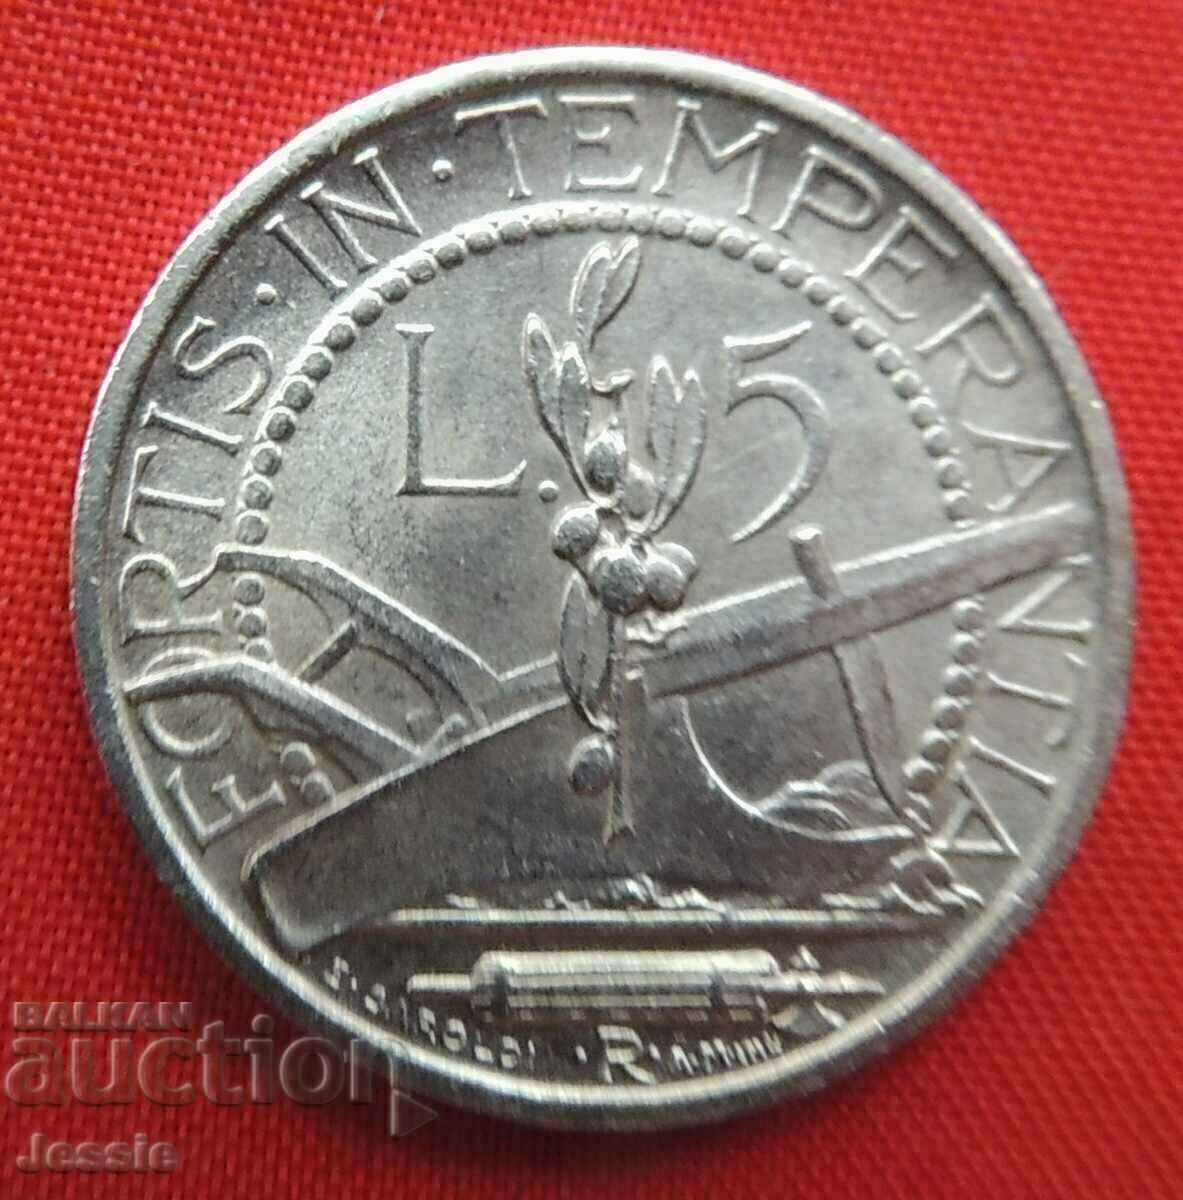 5 Pounds 1938 R San Marino Silver